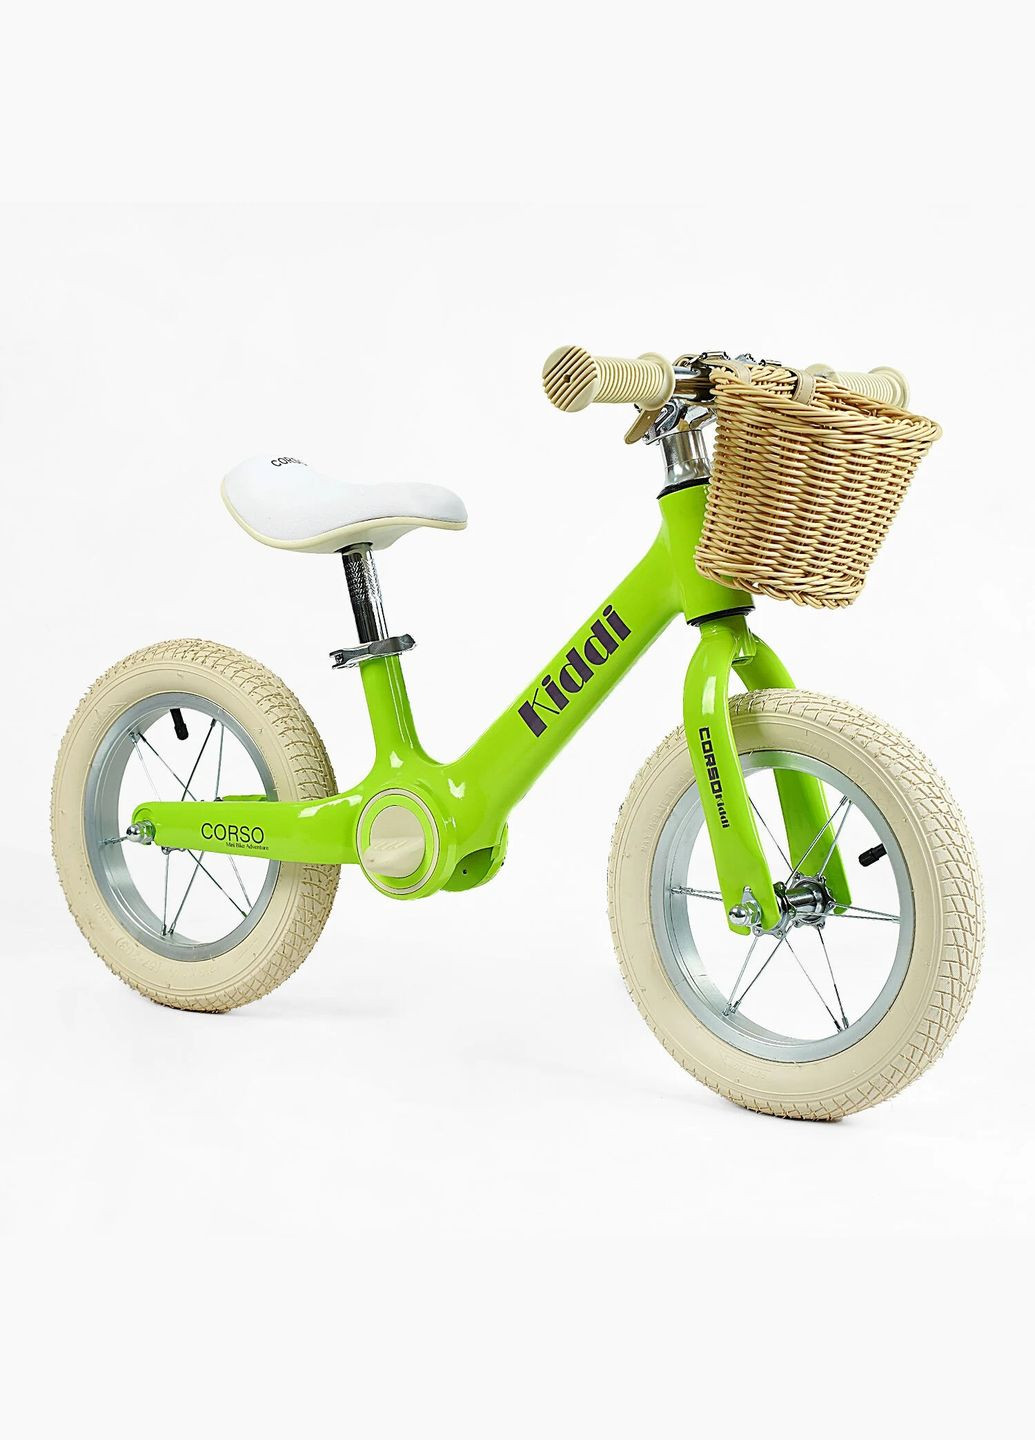 Детский велобег KIDDI ML-12328. Магниевая рама, надувные колеса 12", подставка для ног, корзина Corso (290254805)